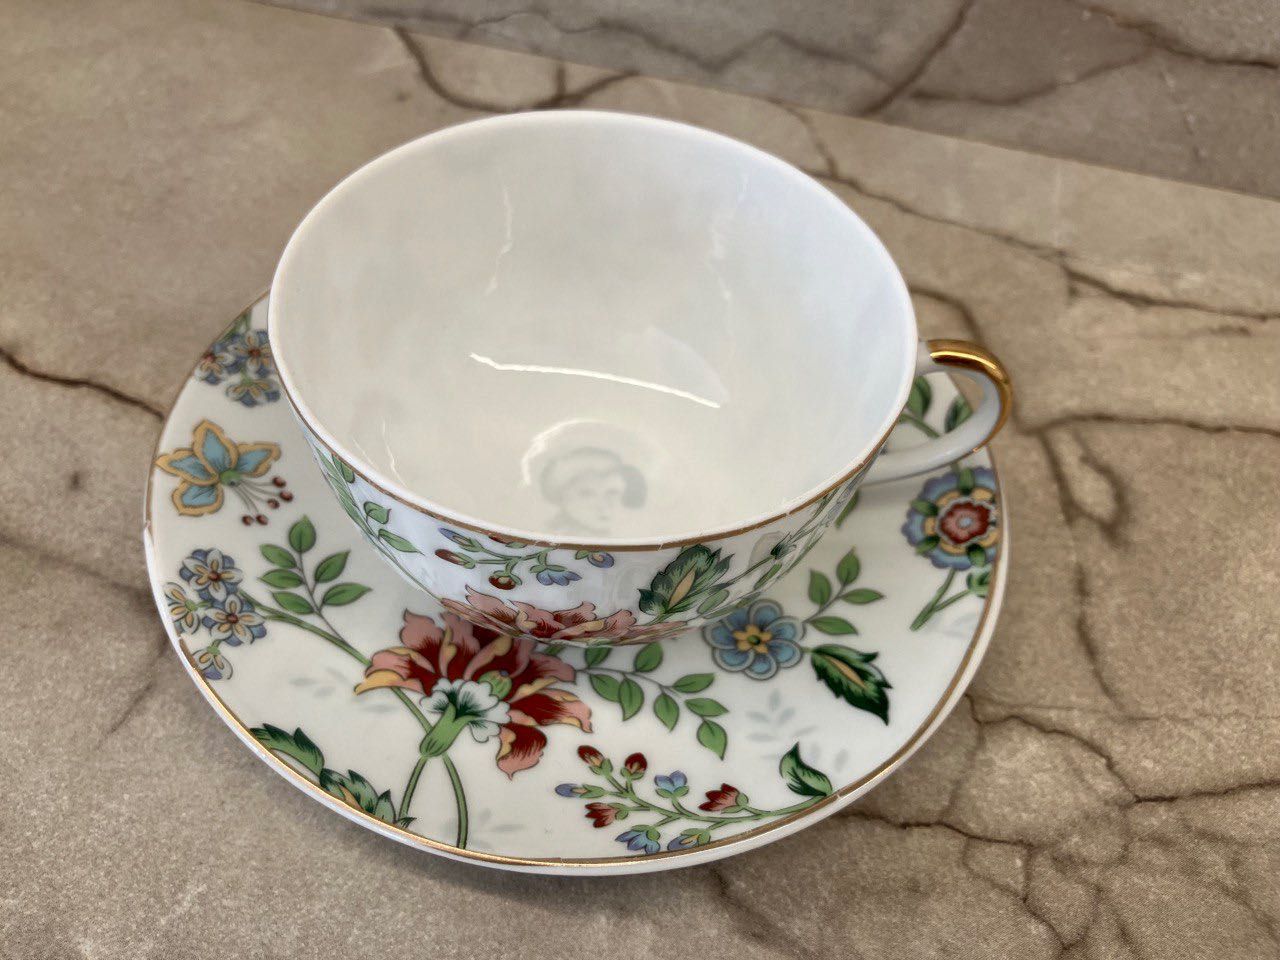 Сервіз Royal porcelain England collection чай/кава